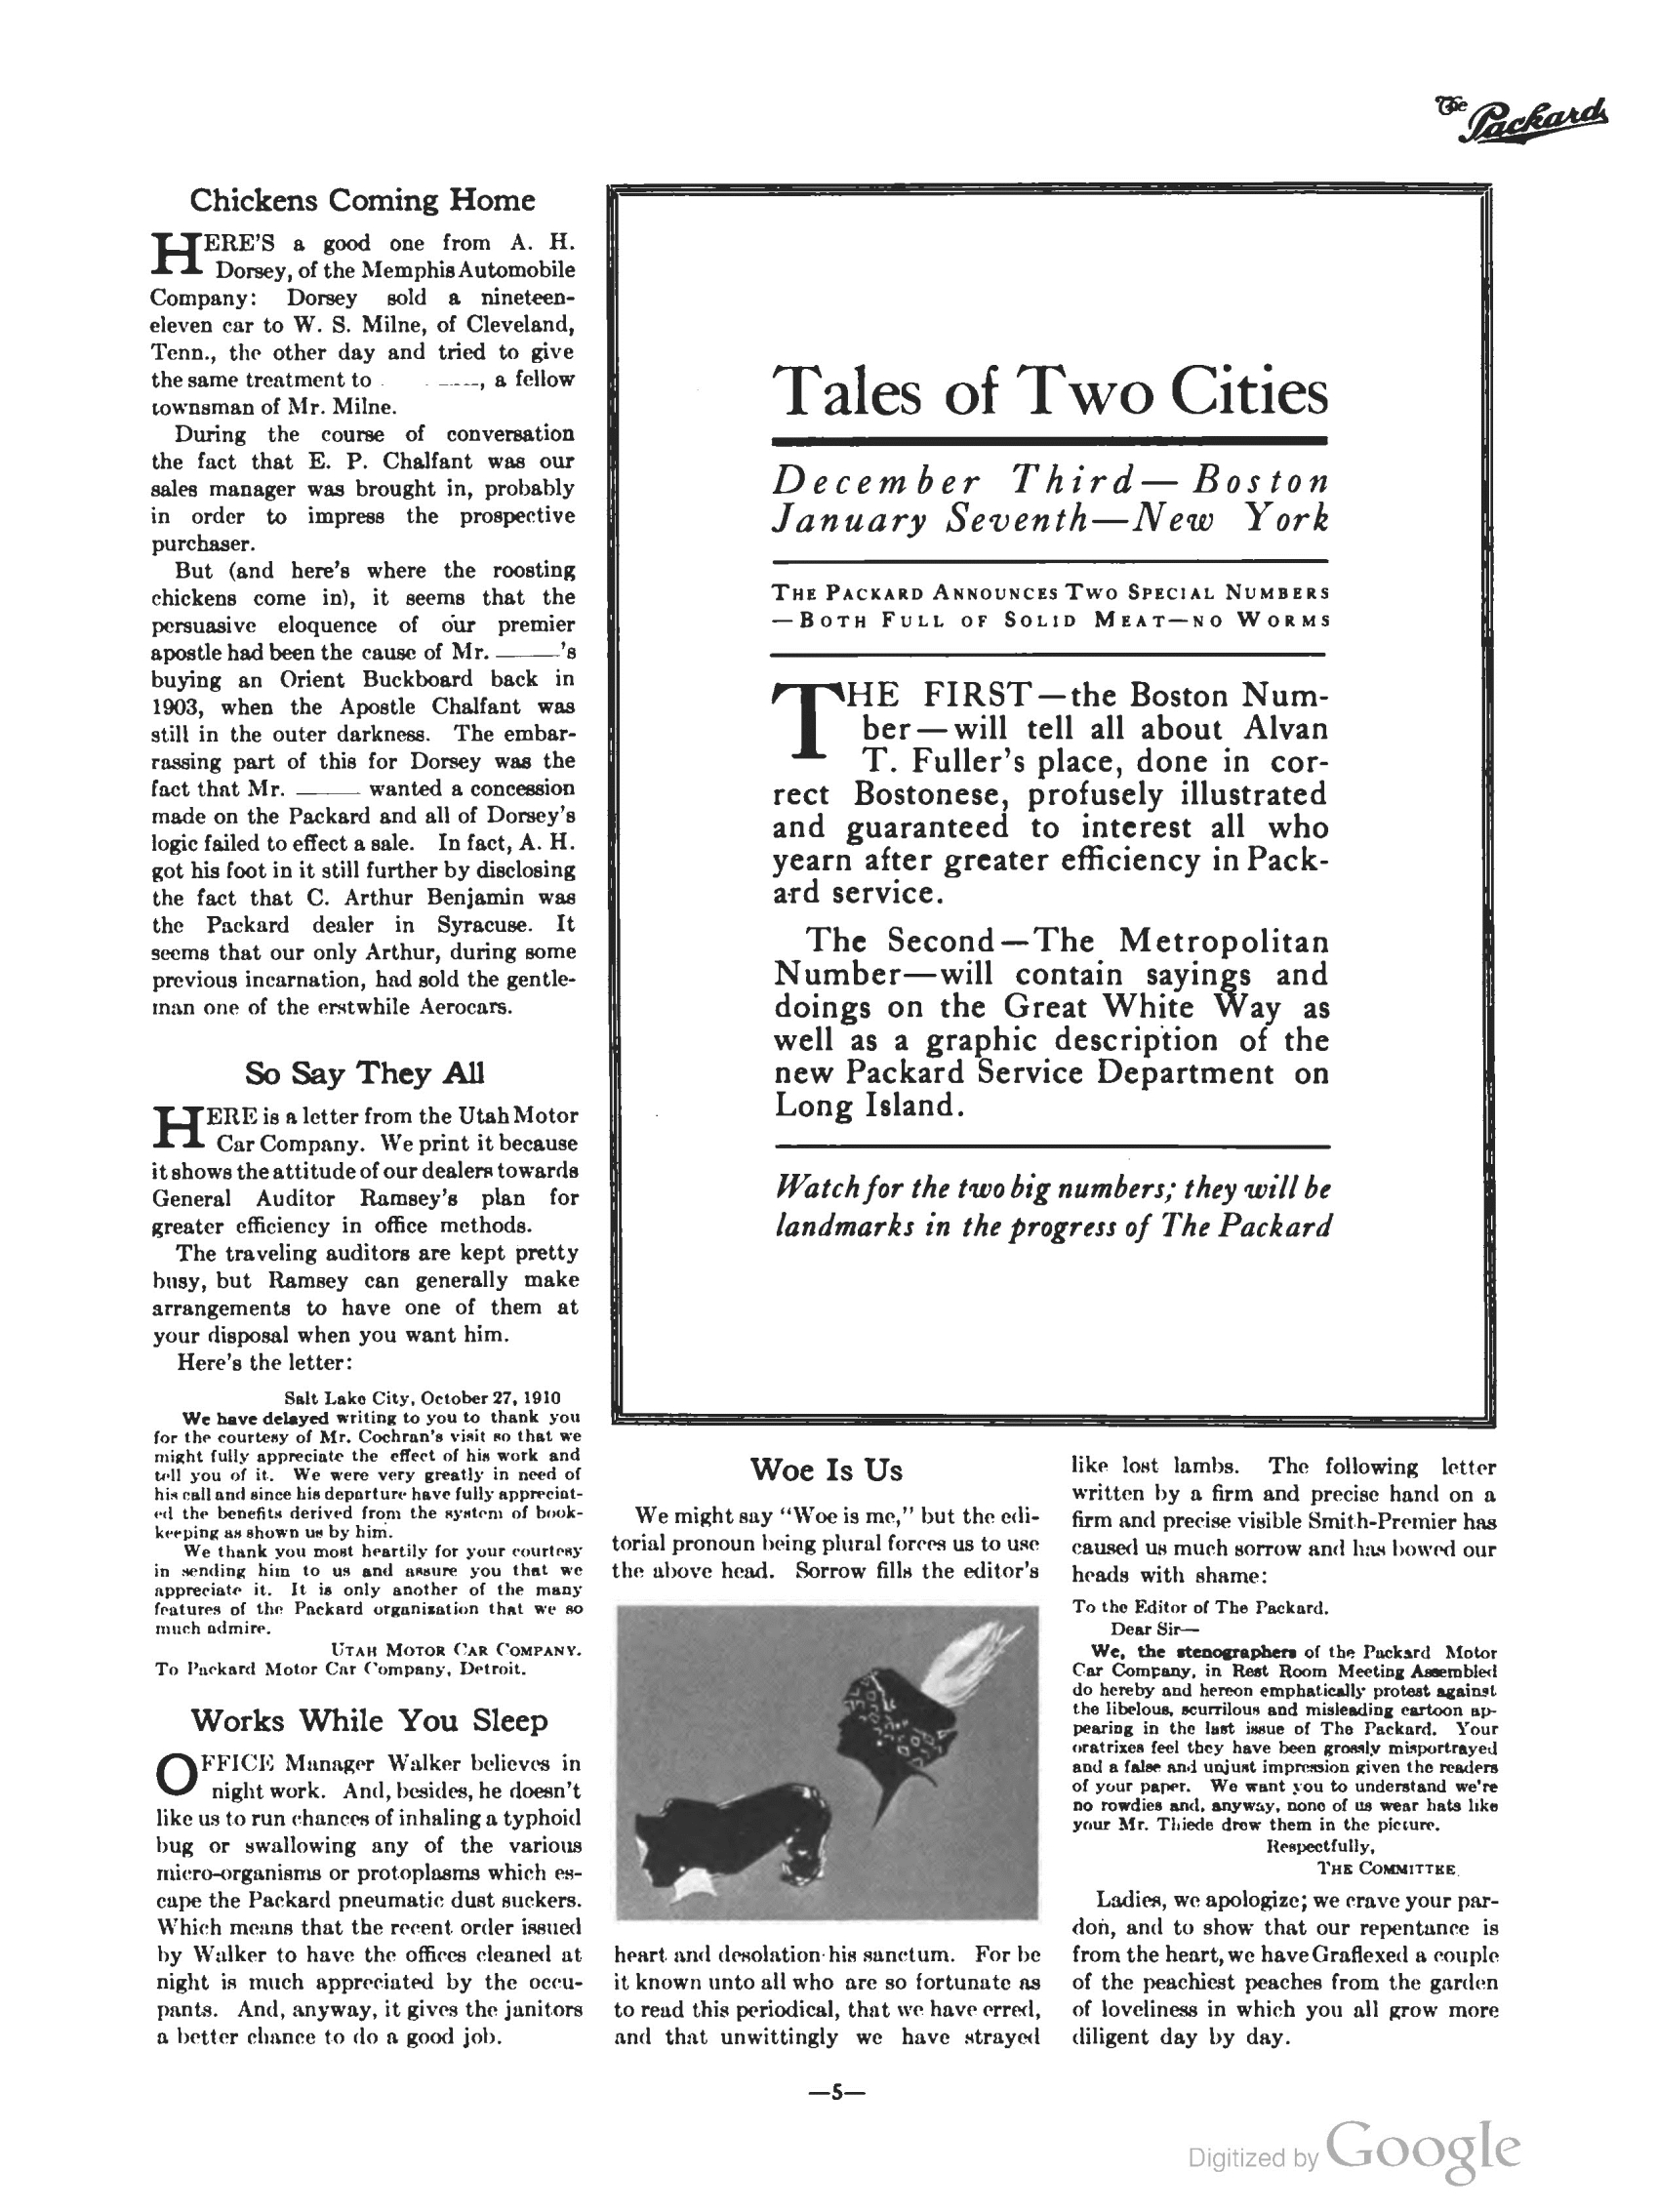 1910_The_Packard_Newsletter-219